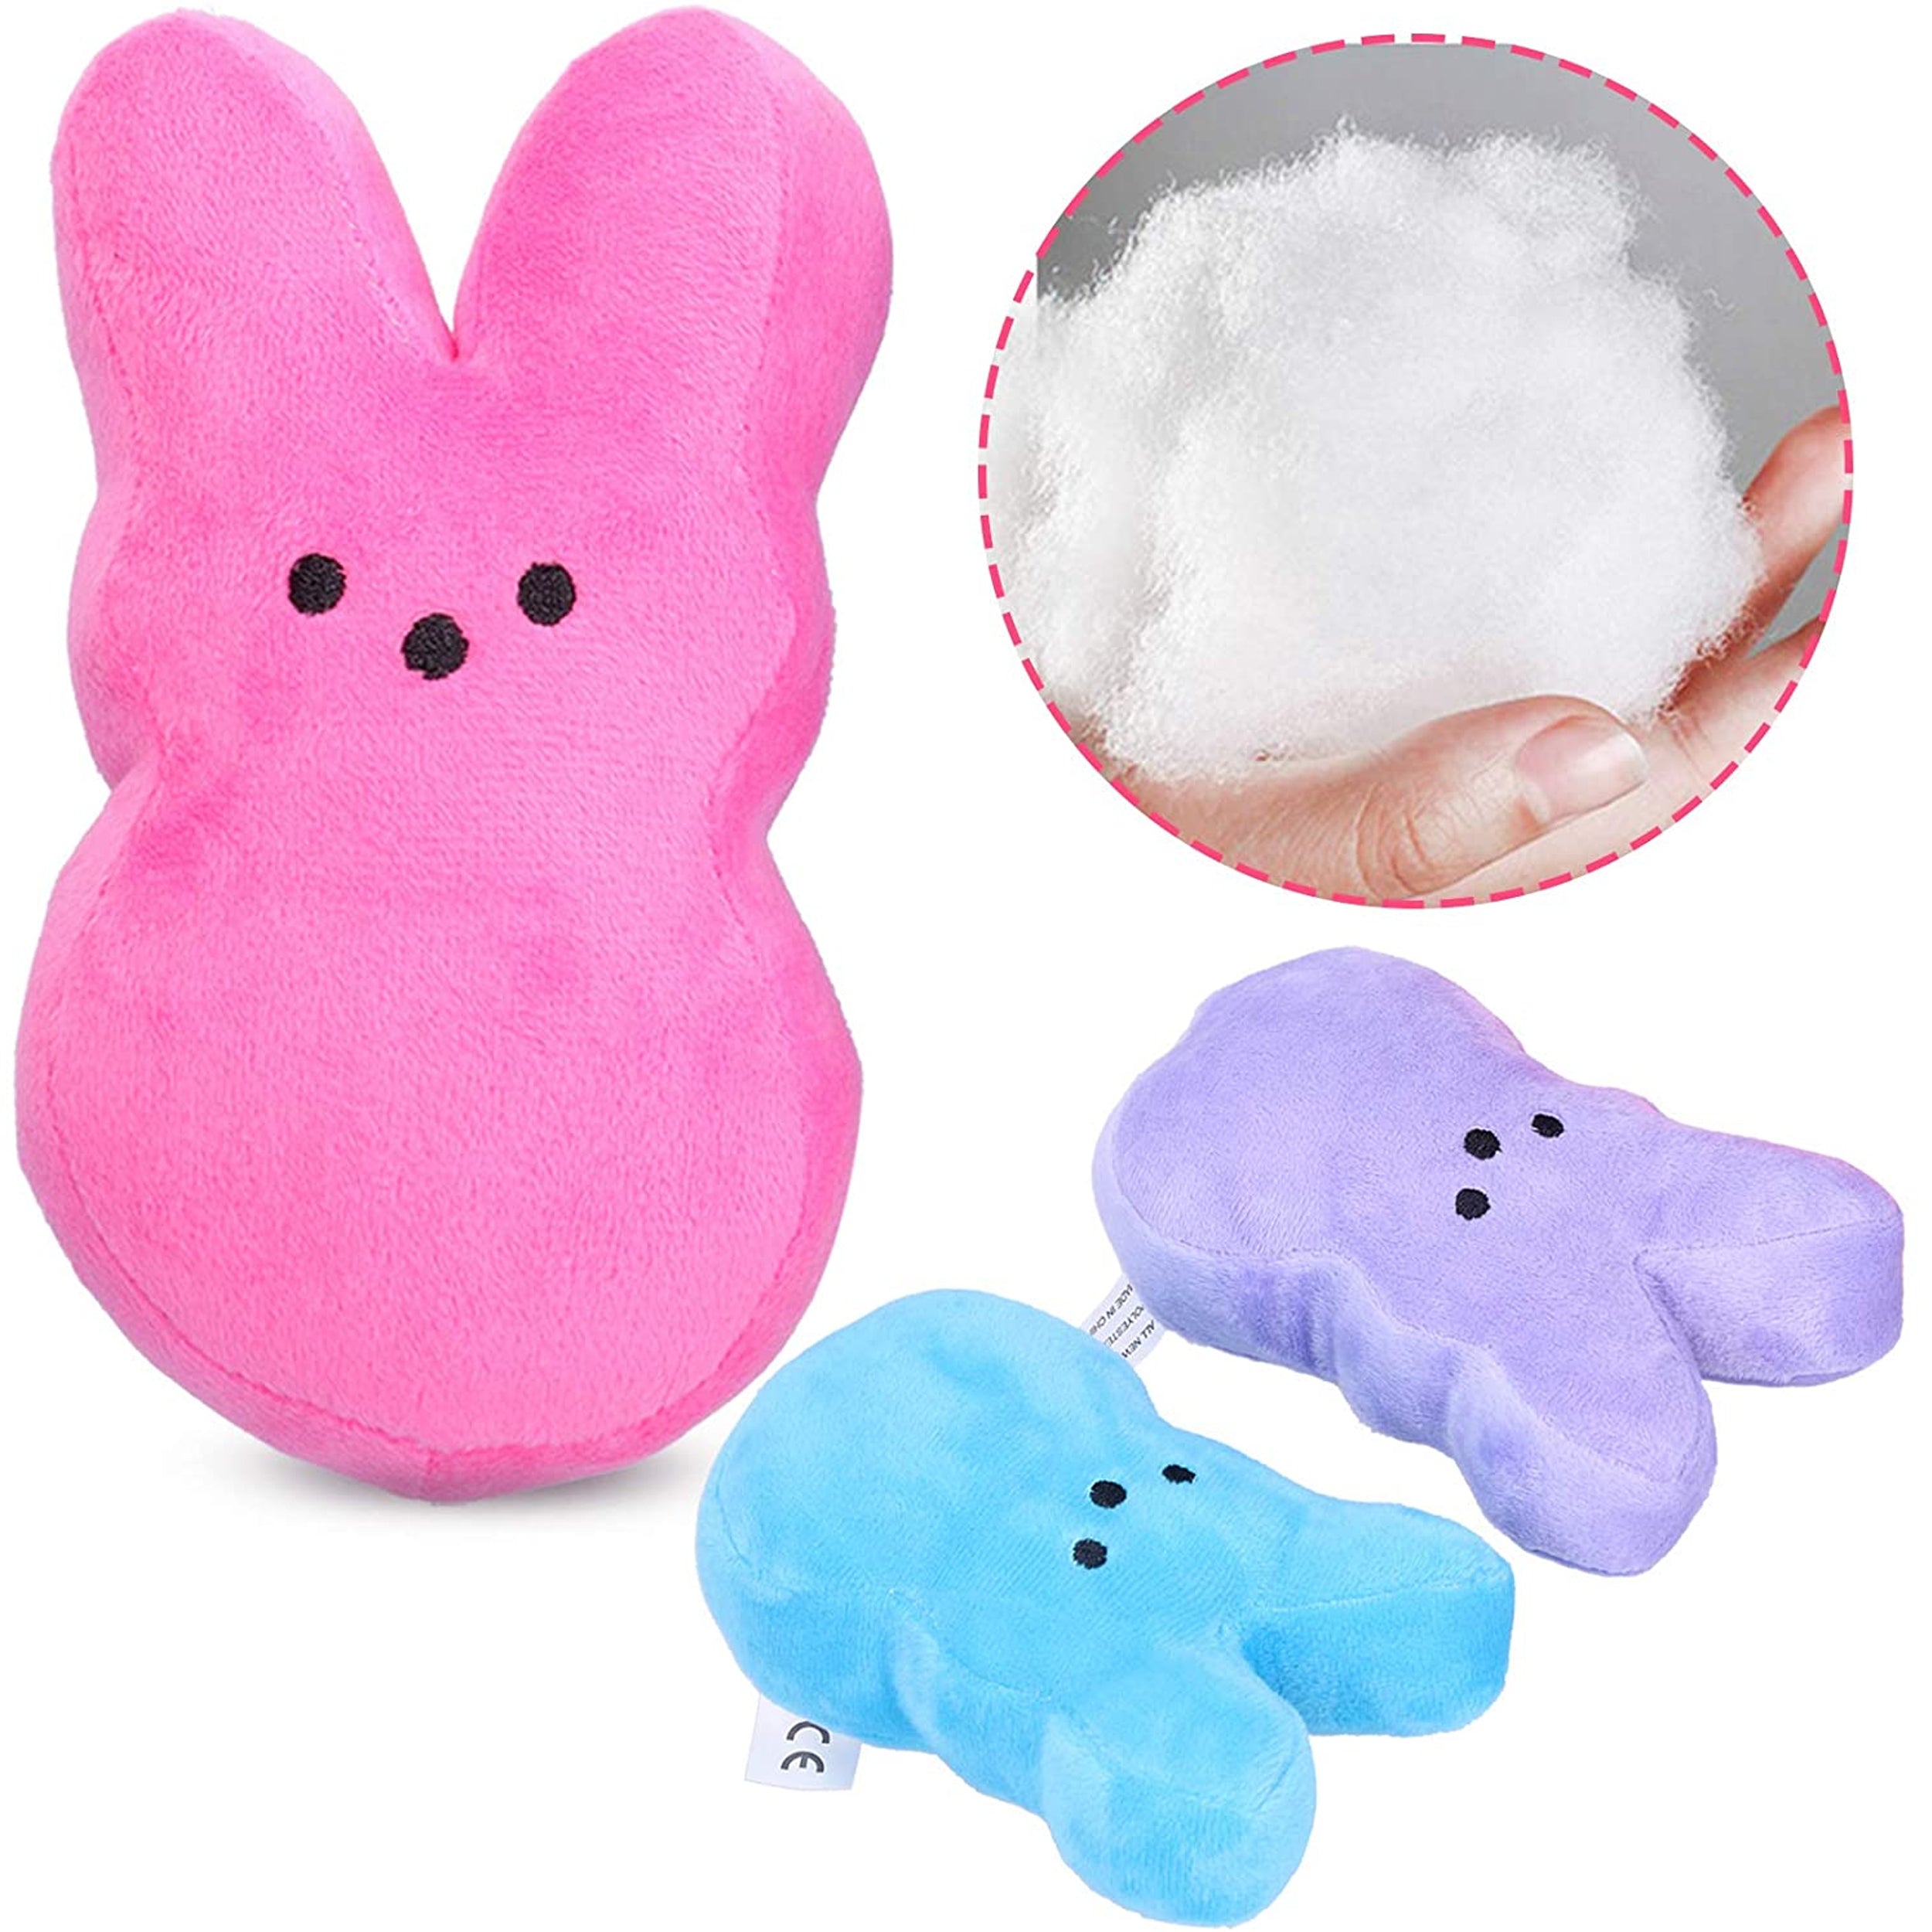 Easter Bunny Peeps Plush Toys